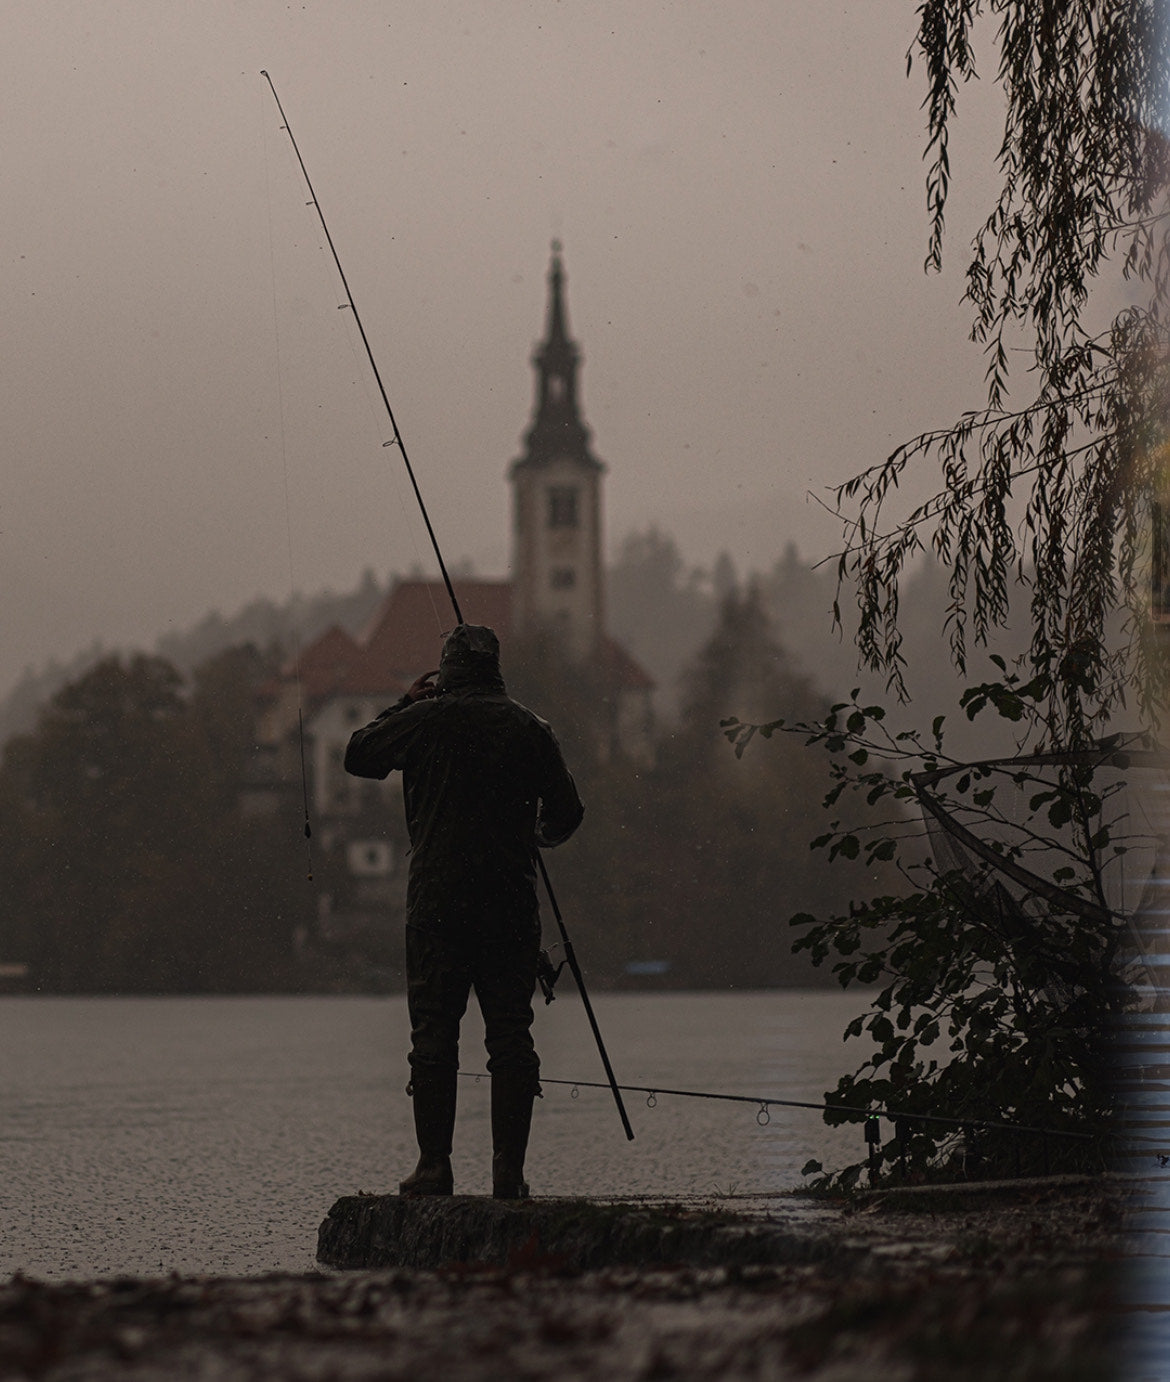 Carp Fishing In The Rain - Is It Better?